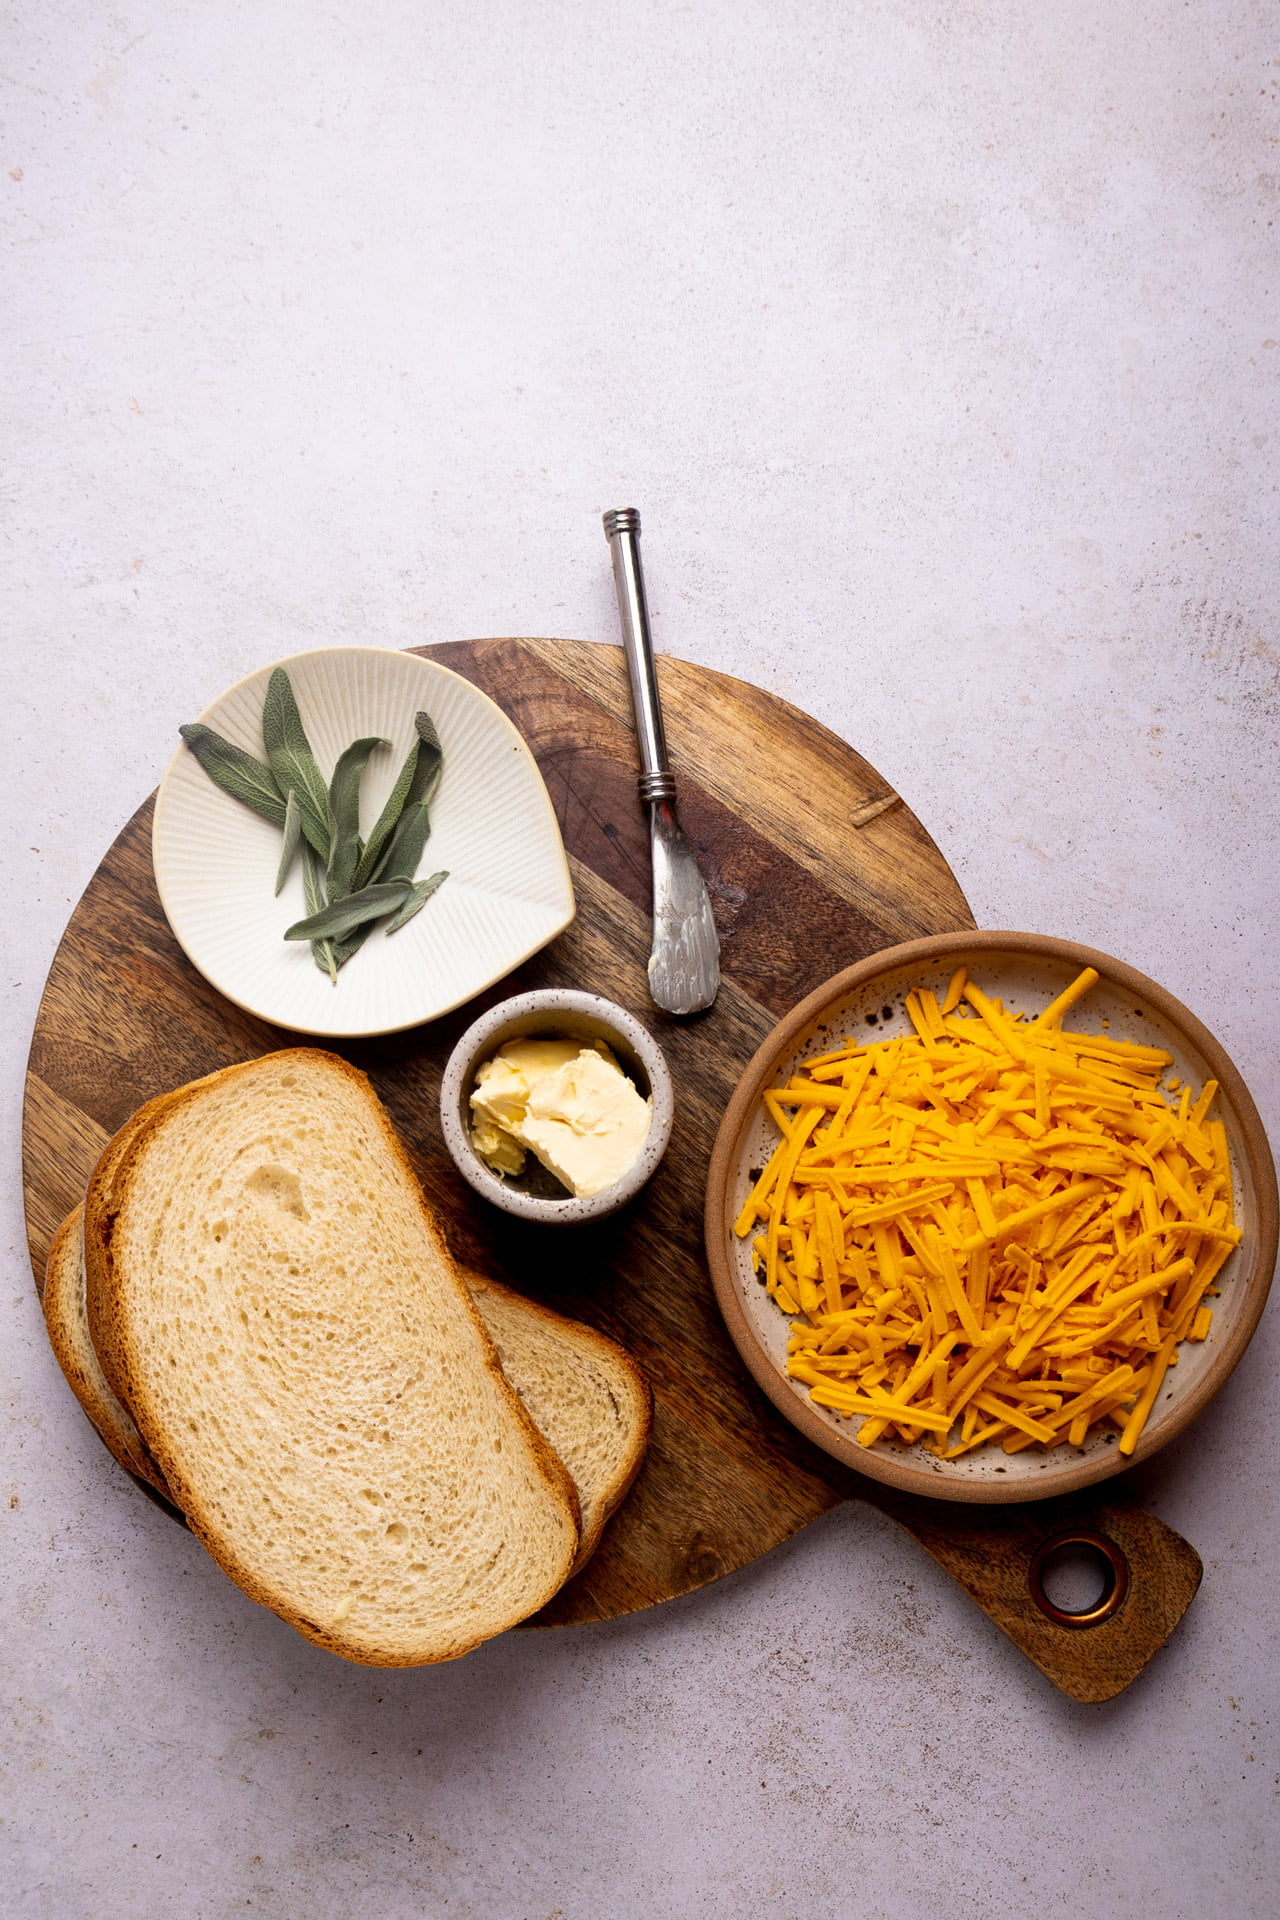 Pan, queso, mantequilla y hojas de salvia.